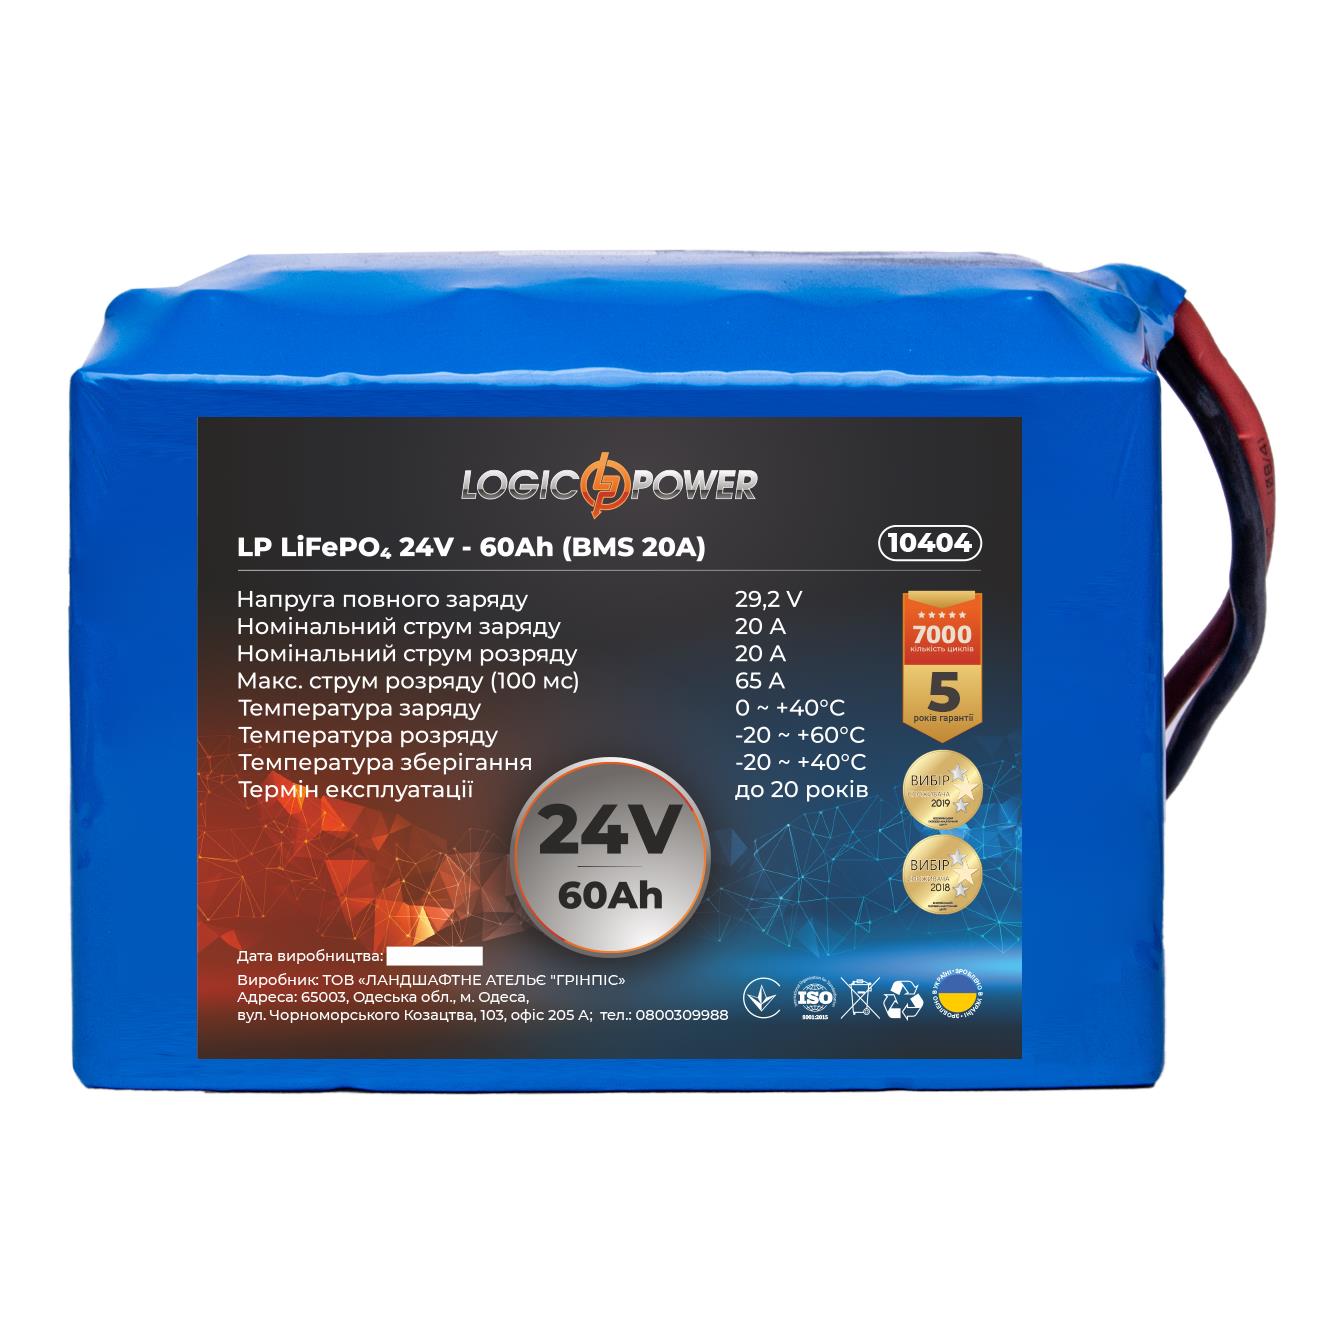 Аккумулятор литий-железо-фосфатный LogicPower LP LiFePO4 24V - 60 Ah (BMS 20A) (10404)